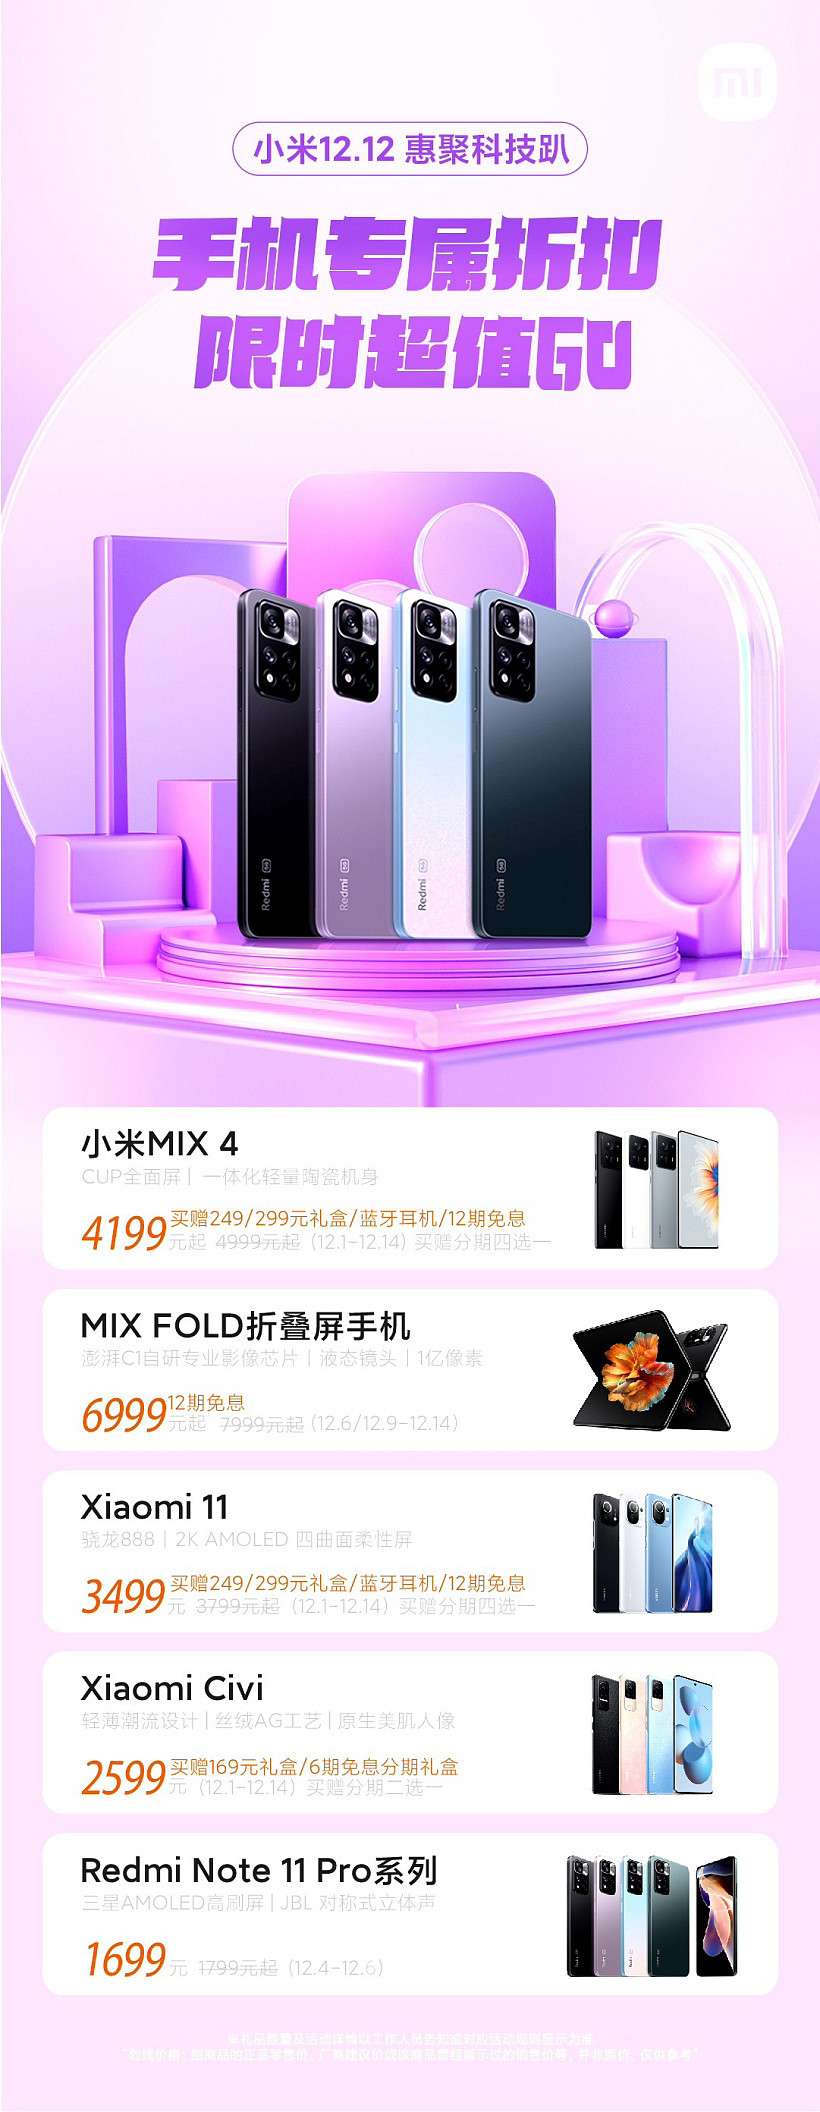 小米手机公布双 12 优惠活动：MIX 4 4199 元起，还赠礼盒、蓝牙耳机 - 1